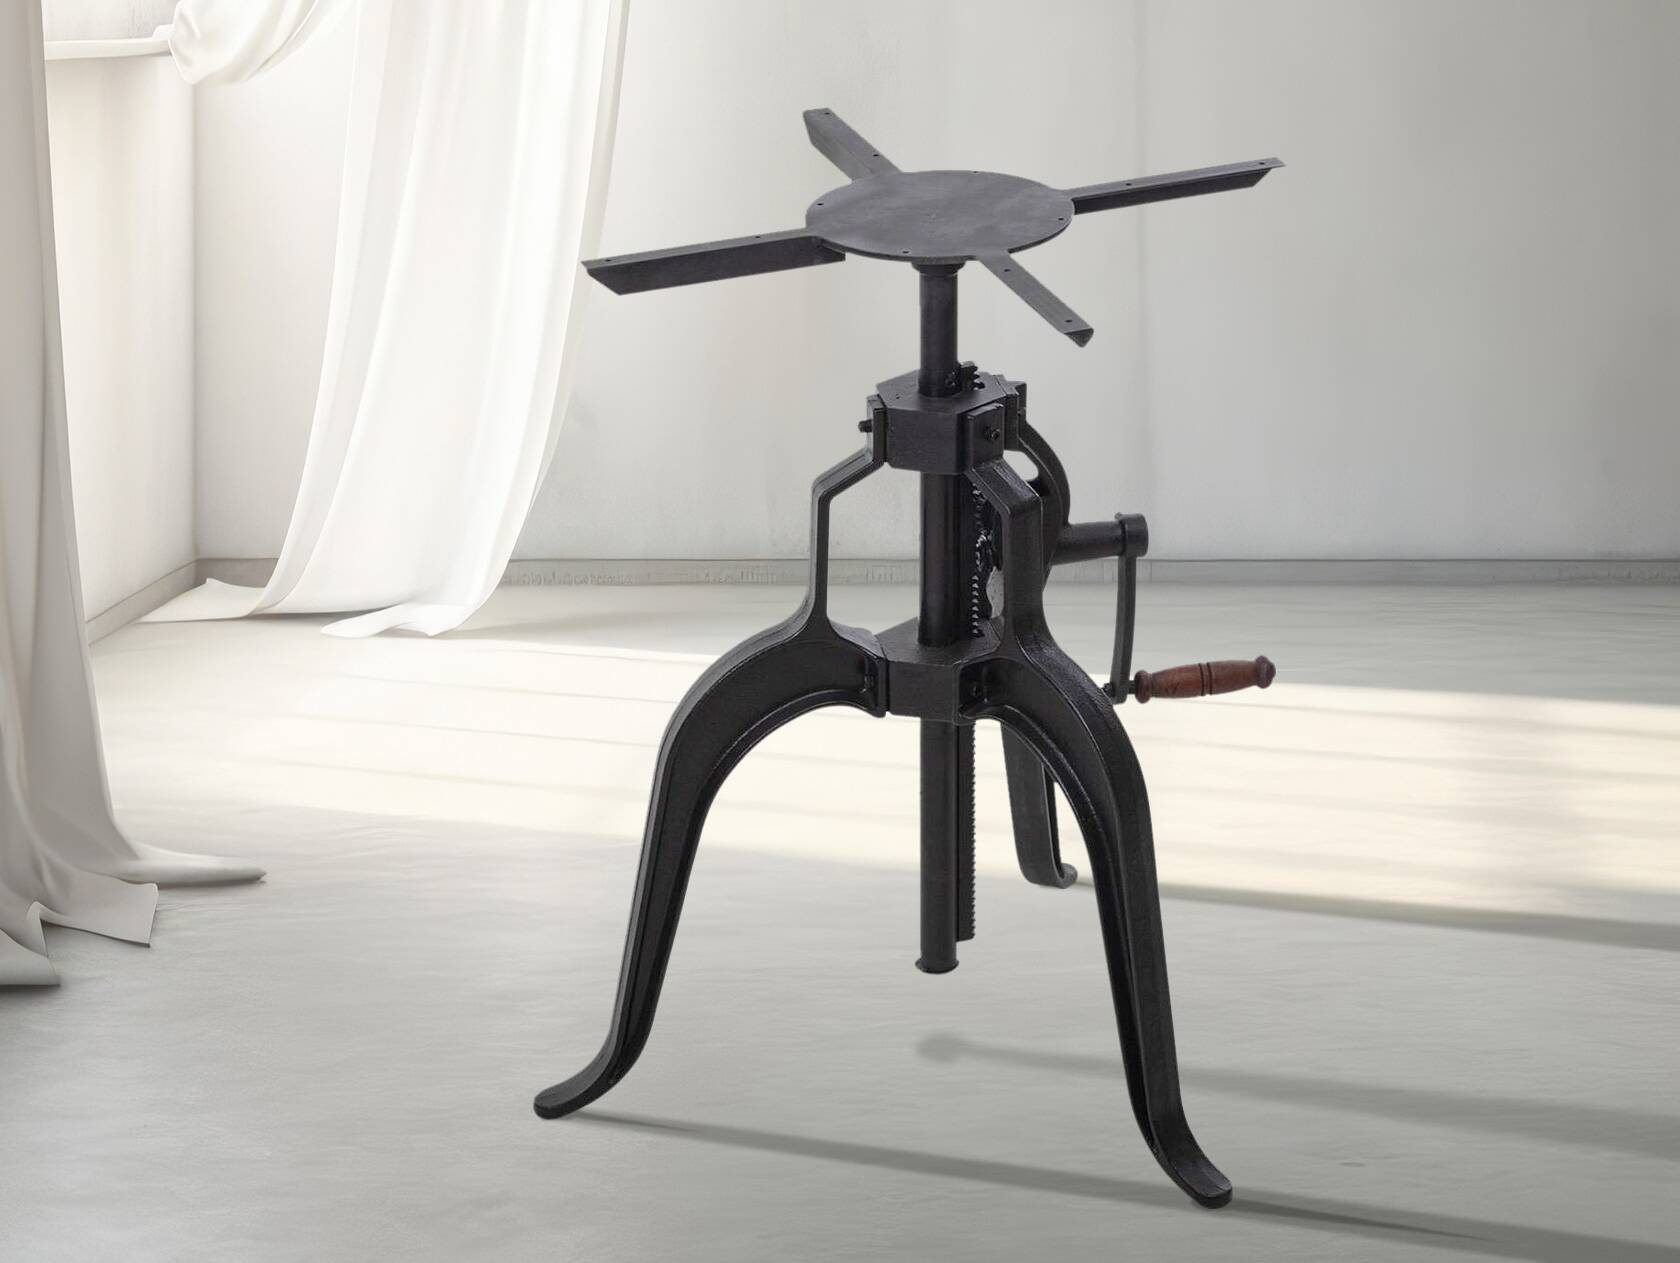 Höhenverstellbares Tischgestell für Esstisch / Bartisch, Material Gusseisen, schwarz, Höhe: 72-120 cm 